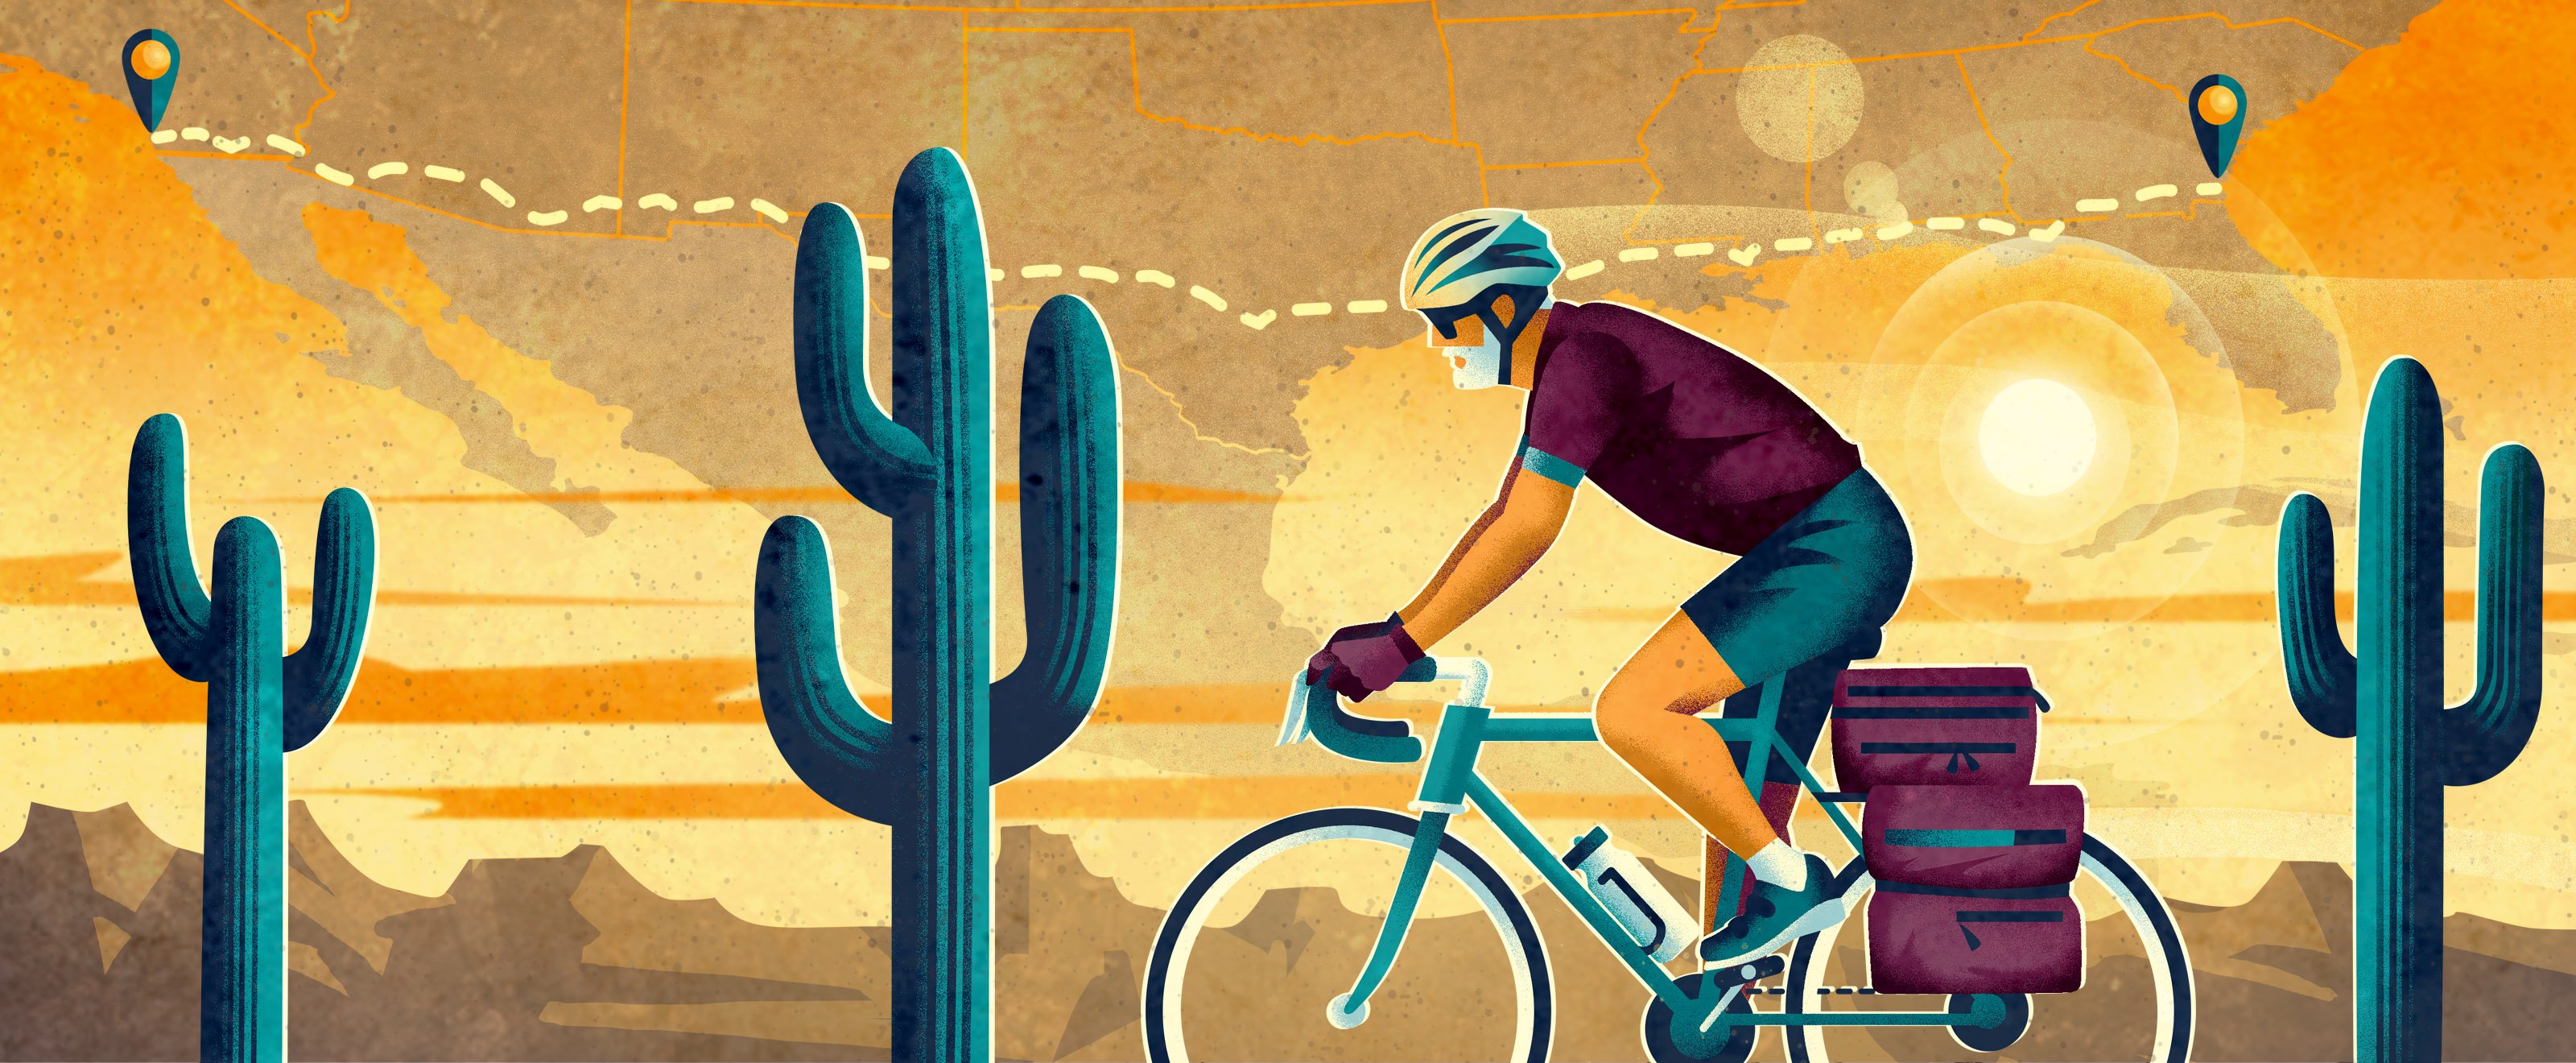 An illustration of a man on a bike riding through a desert